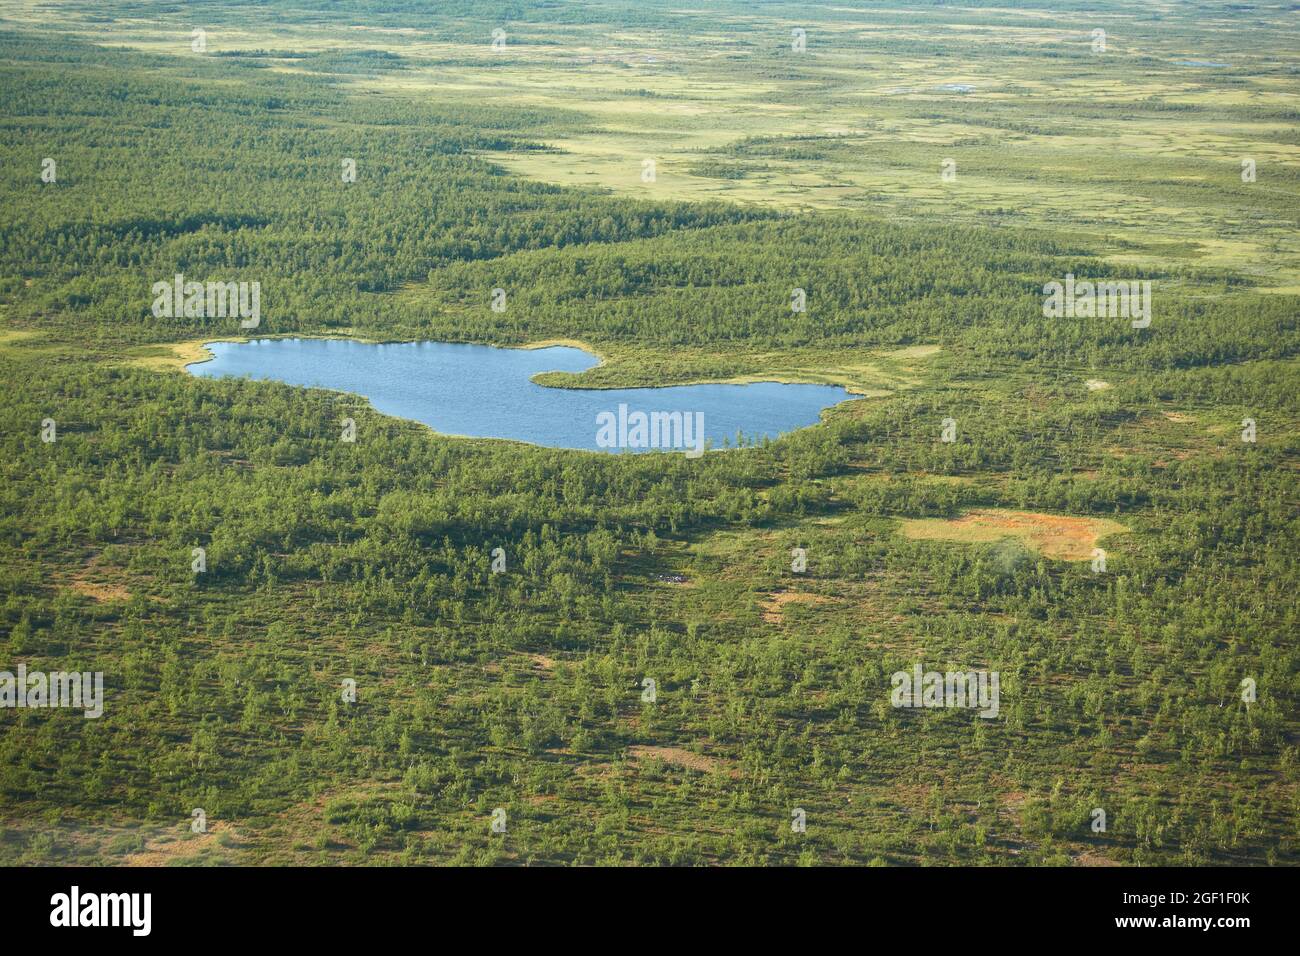 Vista di Eyriel sulla natura selvaggia di Kiruna dall'elicottero con un piccolo lago o laghetto nel mezzo delle paludi e degli alberi nell'estremo nord della Lapponia svedese. Foto Stock